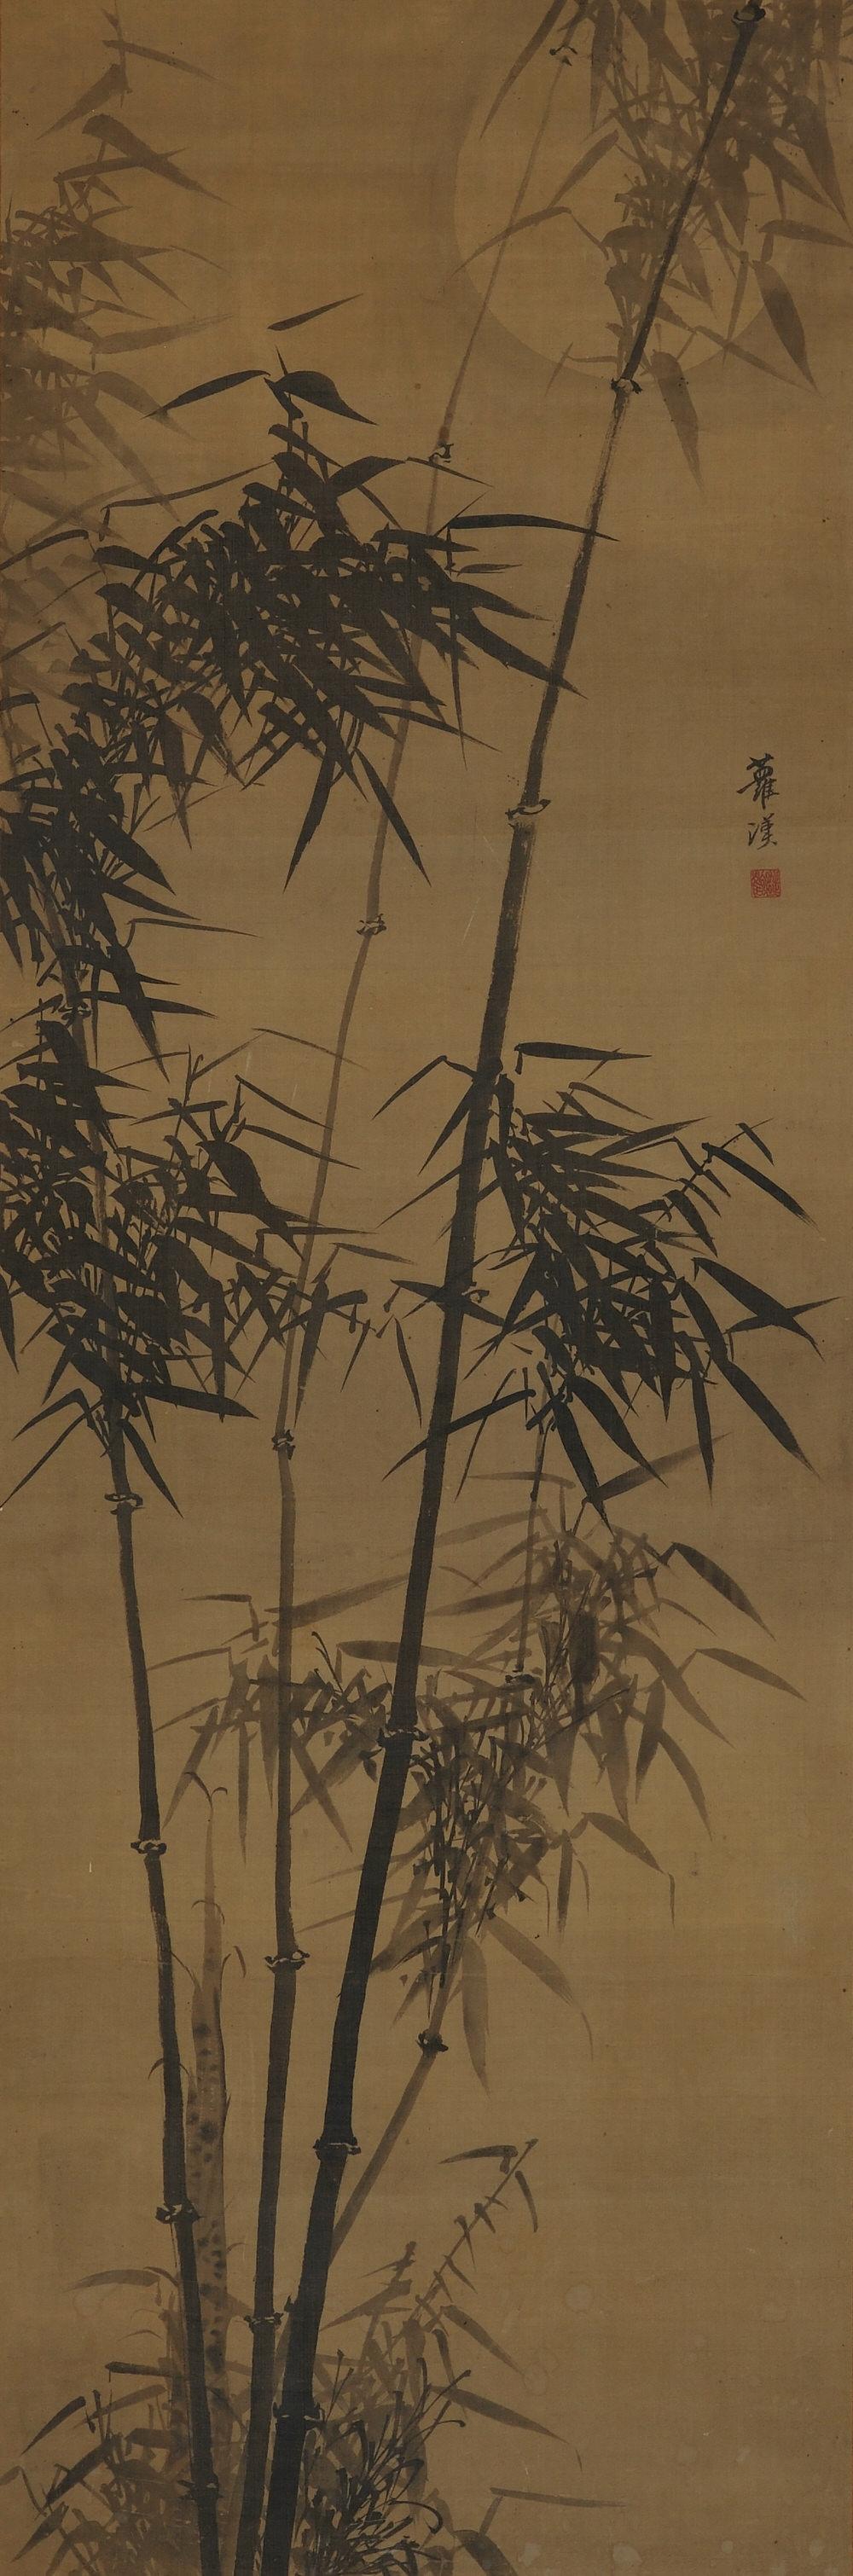 Bambus im Mondlicht

Gamo Rakan (1784-1866)

Hängende Schriftrolle, Tinte auf Seide.

Abmessungen:

Schriftrolle: 201 cm x 58 cm

Bild: 137 cm x 45 cm

In diesem Werk von Gamo Rakan aus dem frühen 19. Jahrhundert zeichnet eine helle